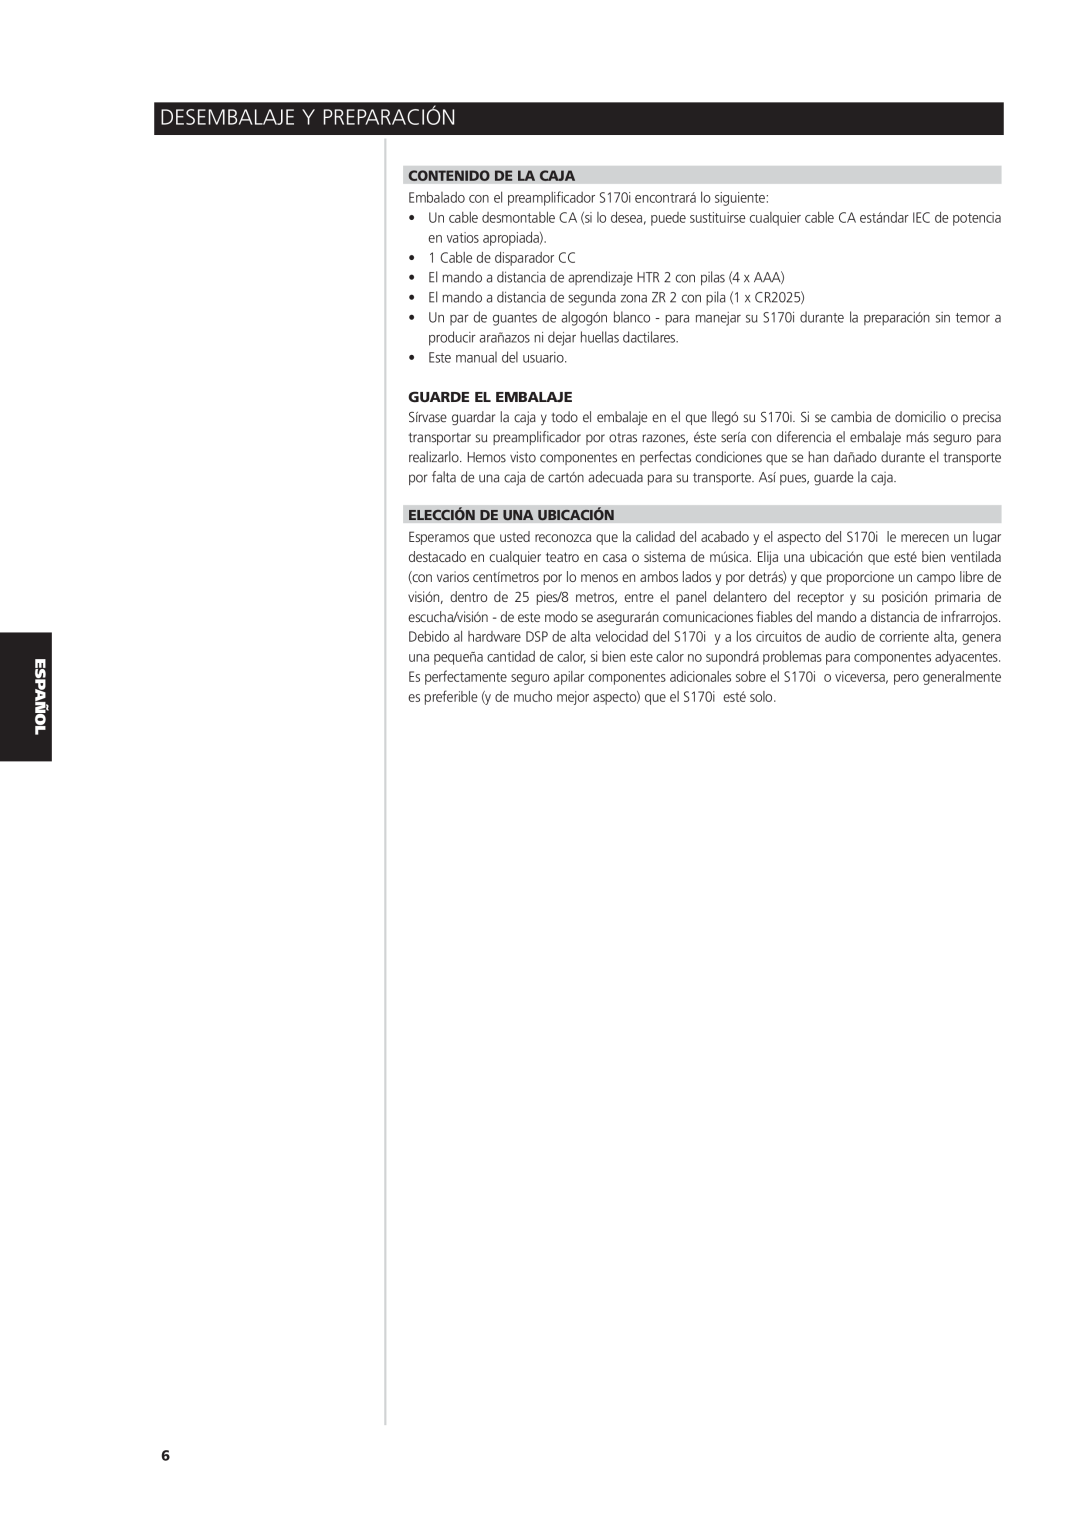 NAD S170iAV owner manual Desembalaje Y Preparación, Contenido De La Caja, Guarde El Embalaje, Elección De Una Ubicación 